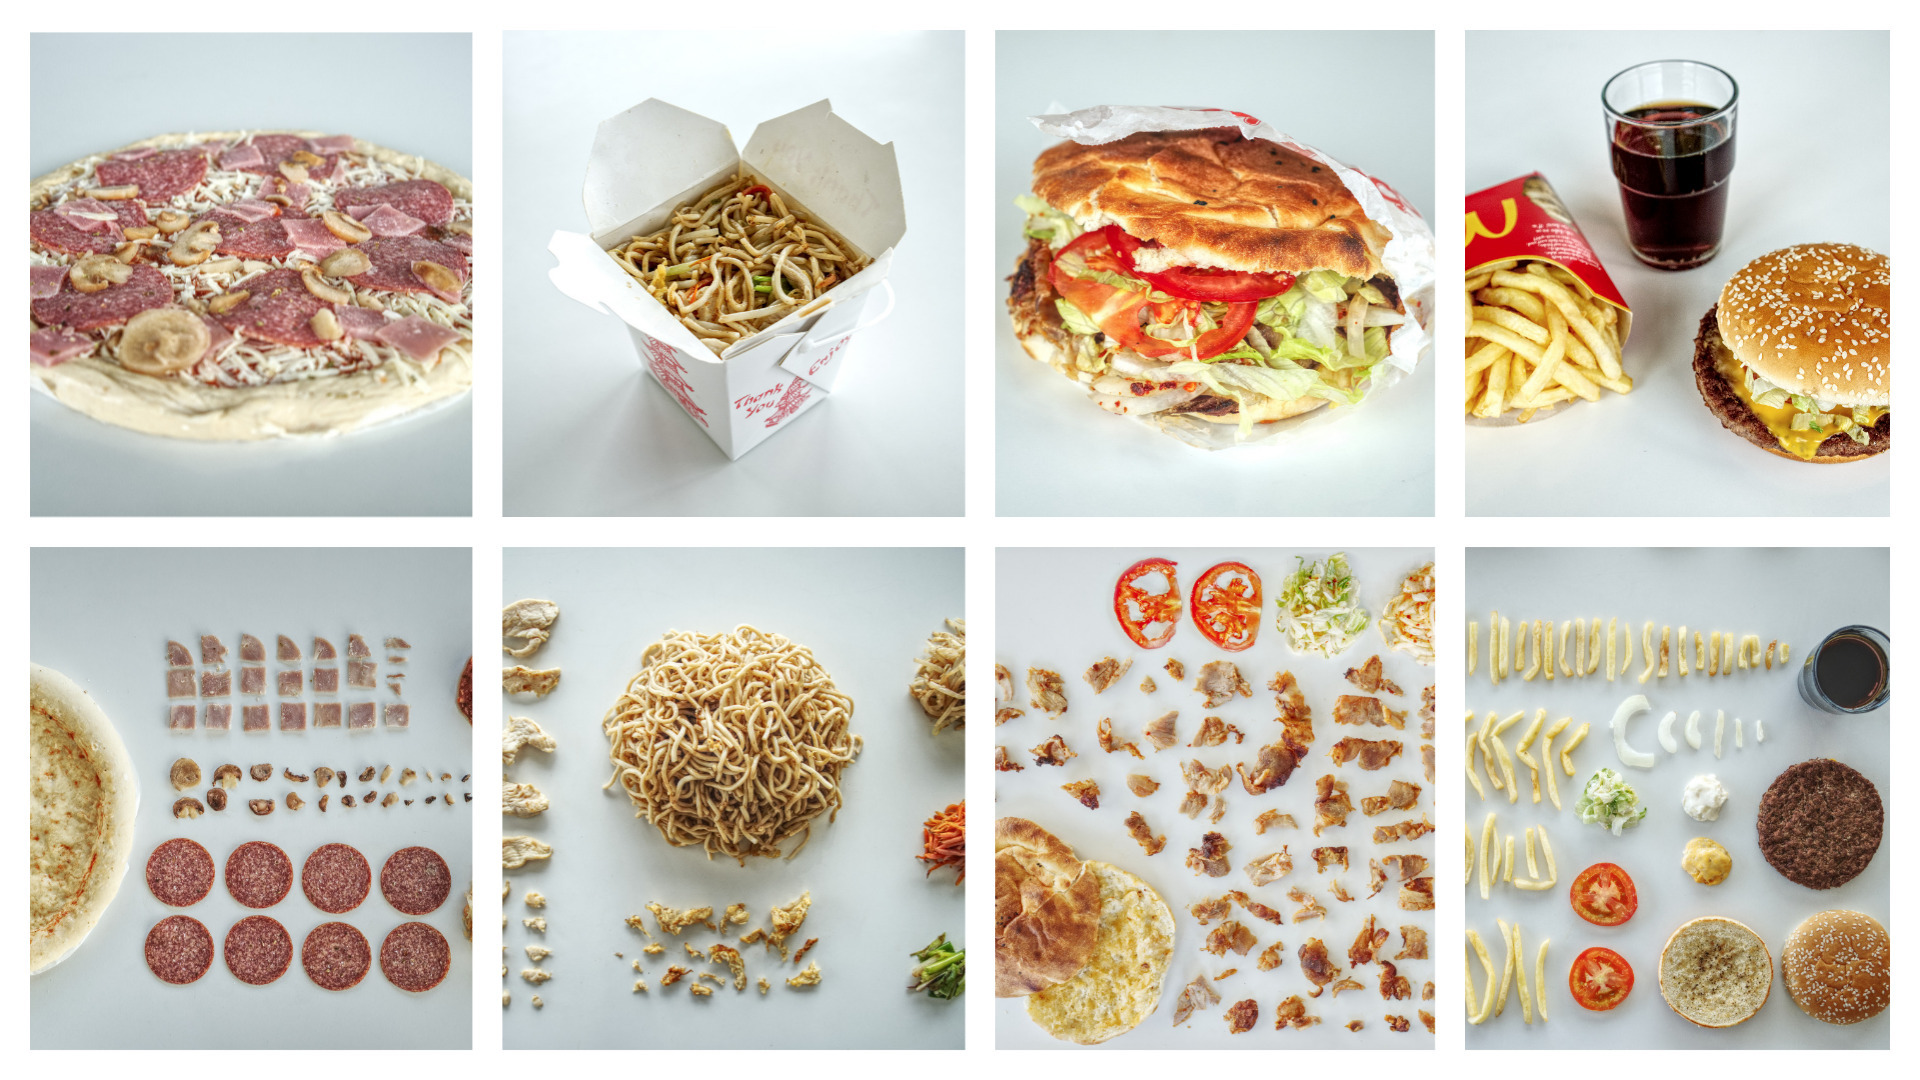 Fotoserie: Fast Food aufgeräumt